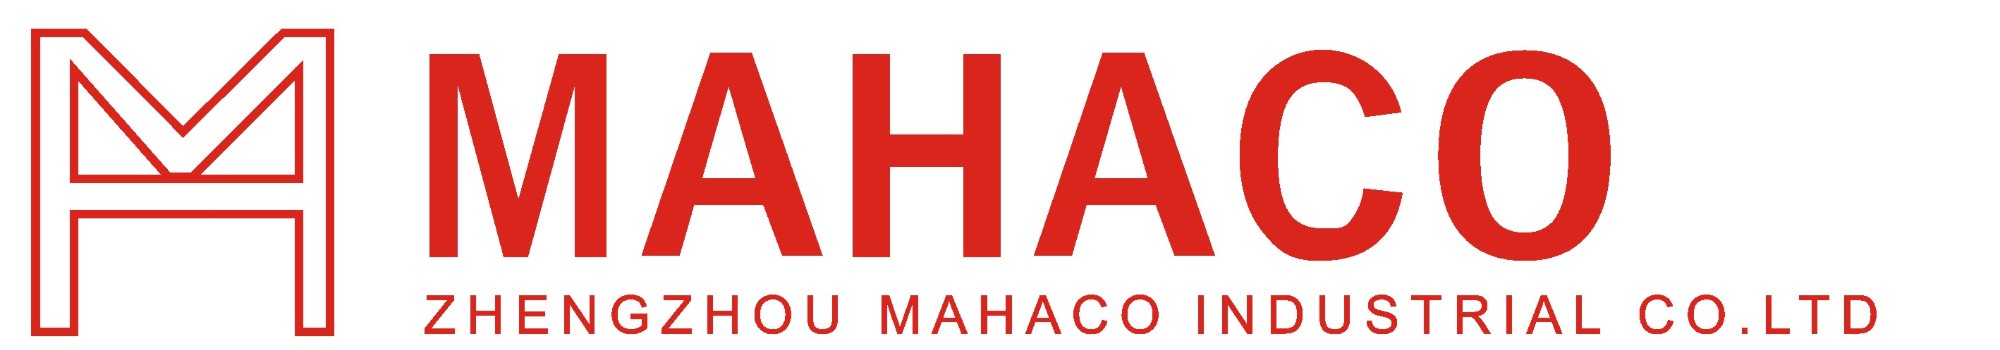 Zhengzhou Mahaco Industrial Co.,Ltd ( M.H.C)